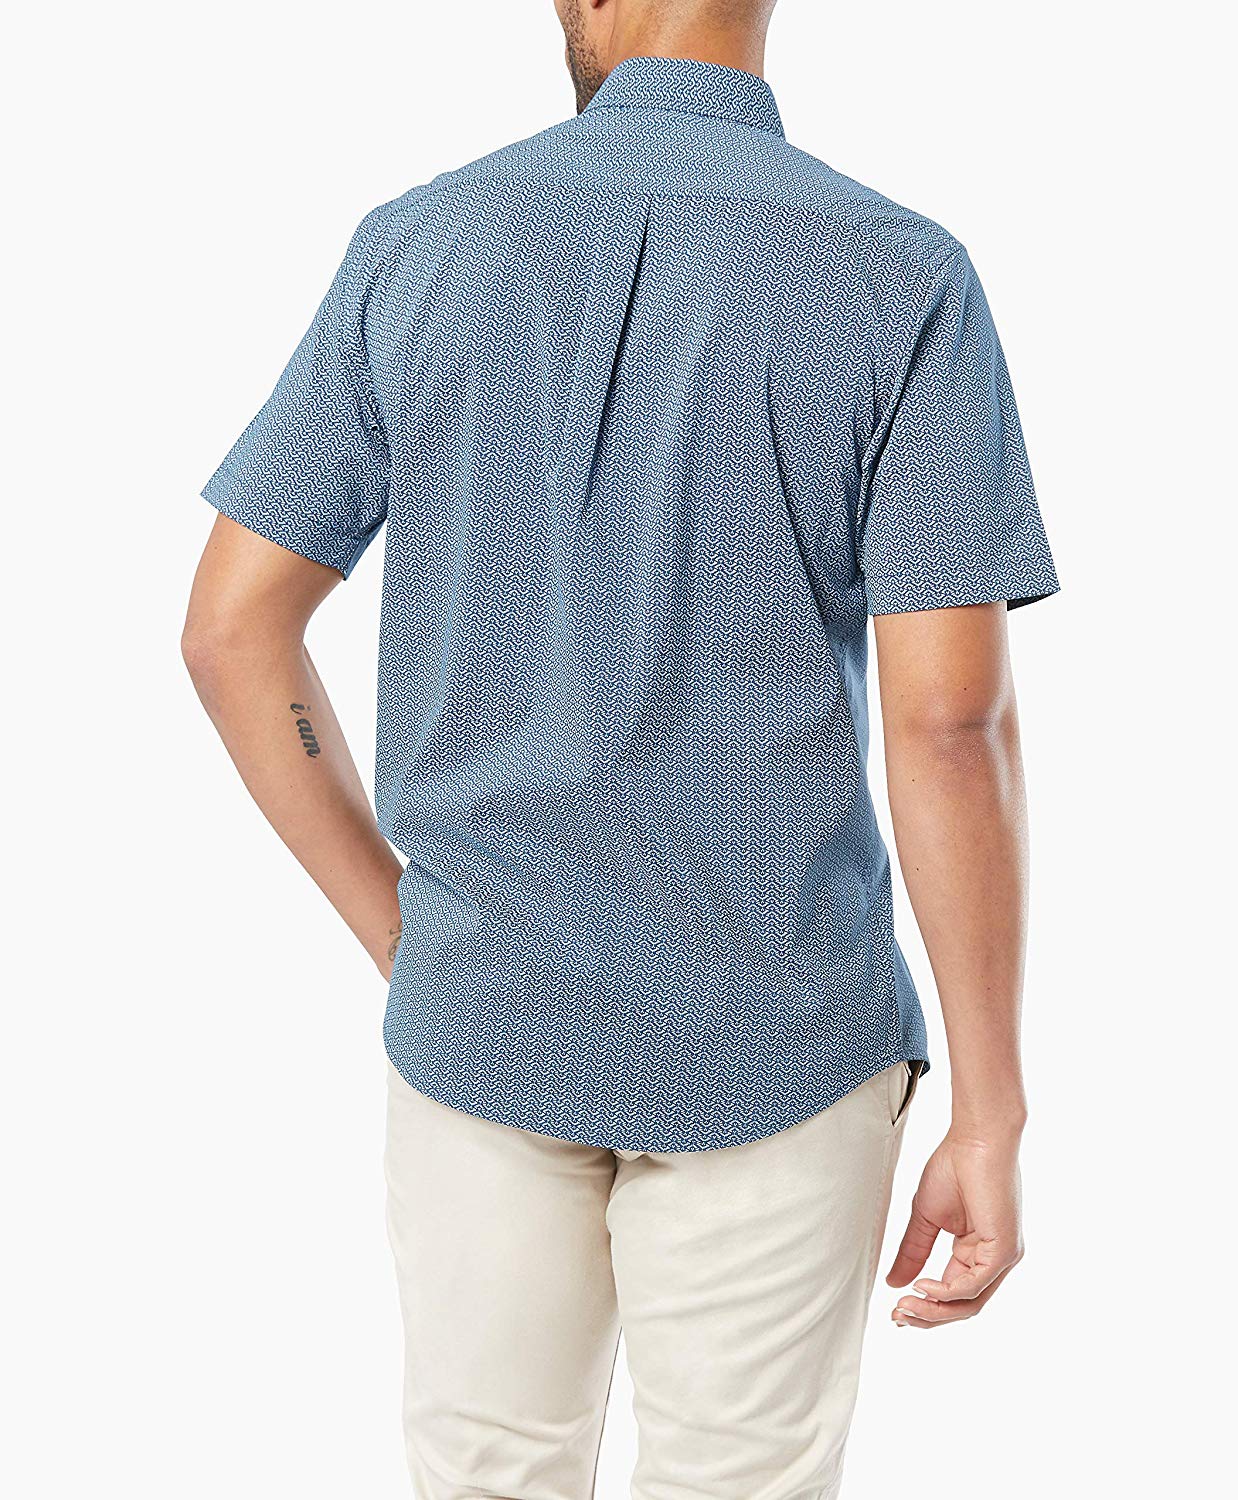 Dockers Men's Short Sleeve Button Down Comfort Flex Shirt,, Blue, Size ...